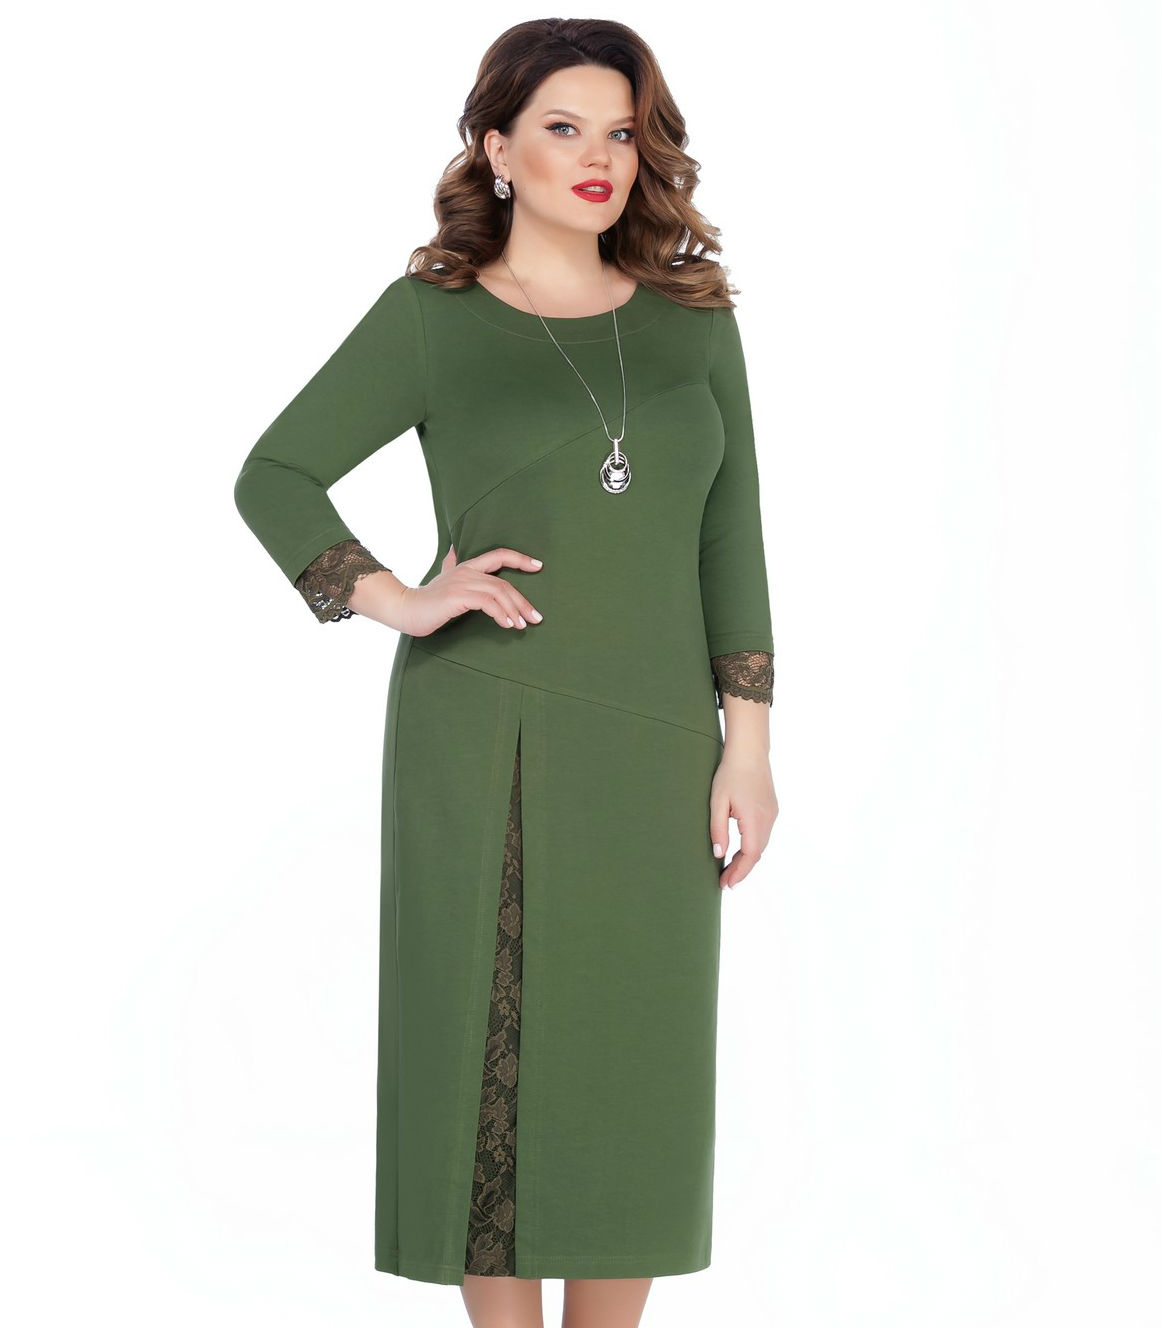 Платье с асимметричными подрезами и кружевом, зеленое